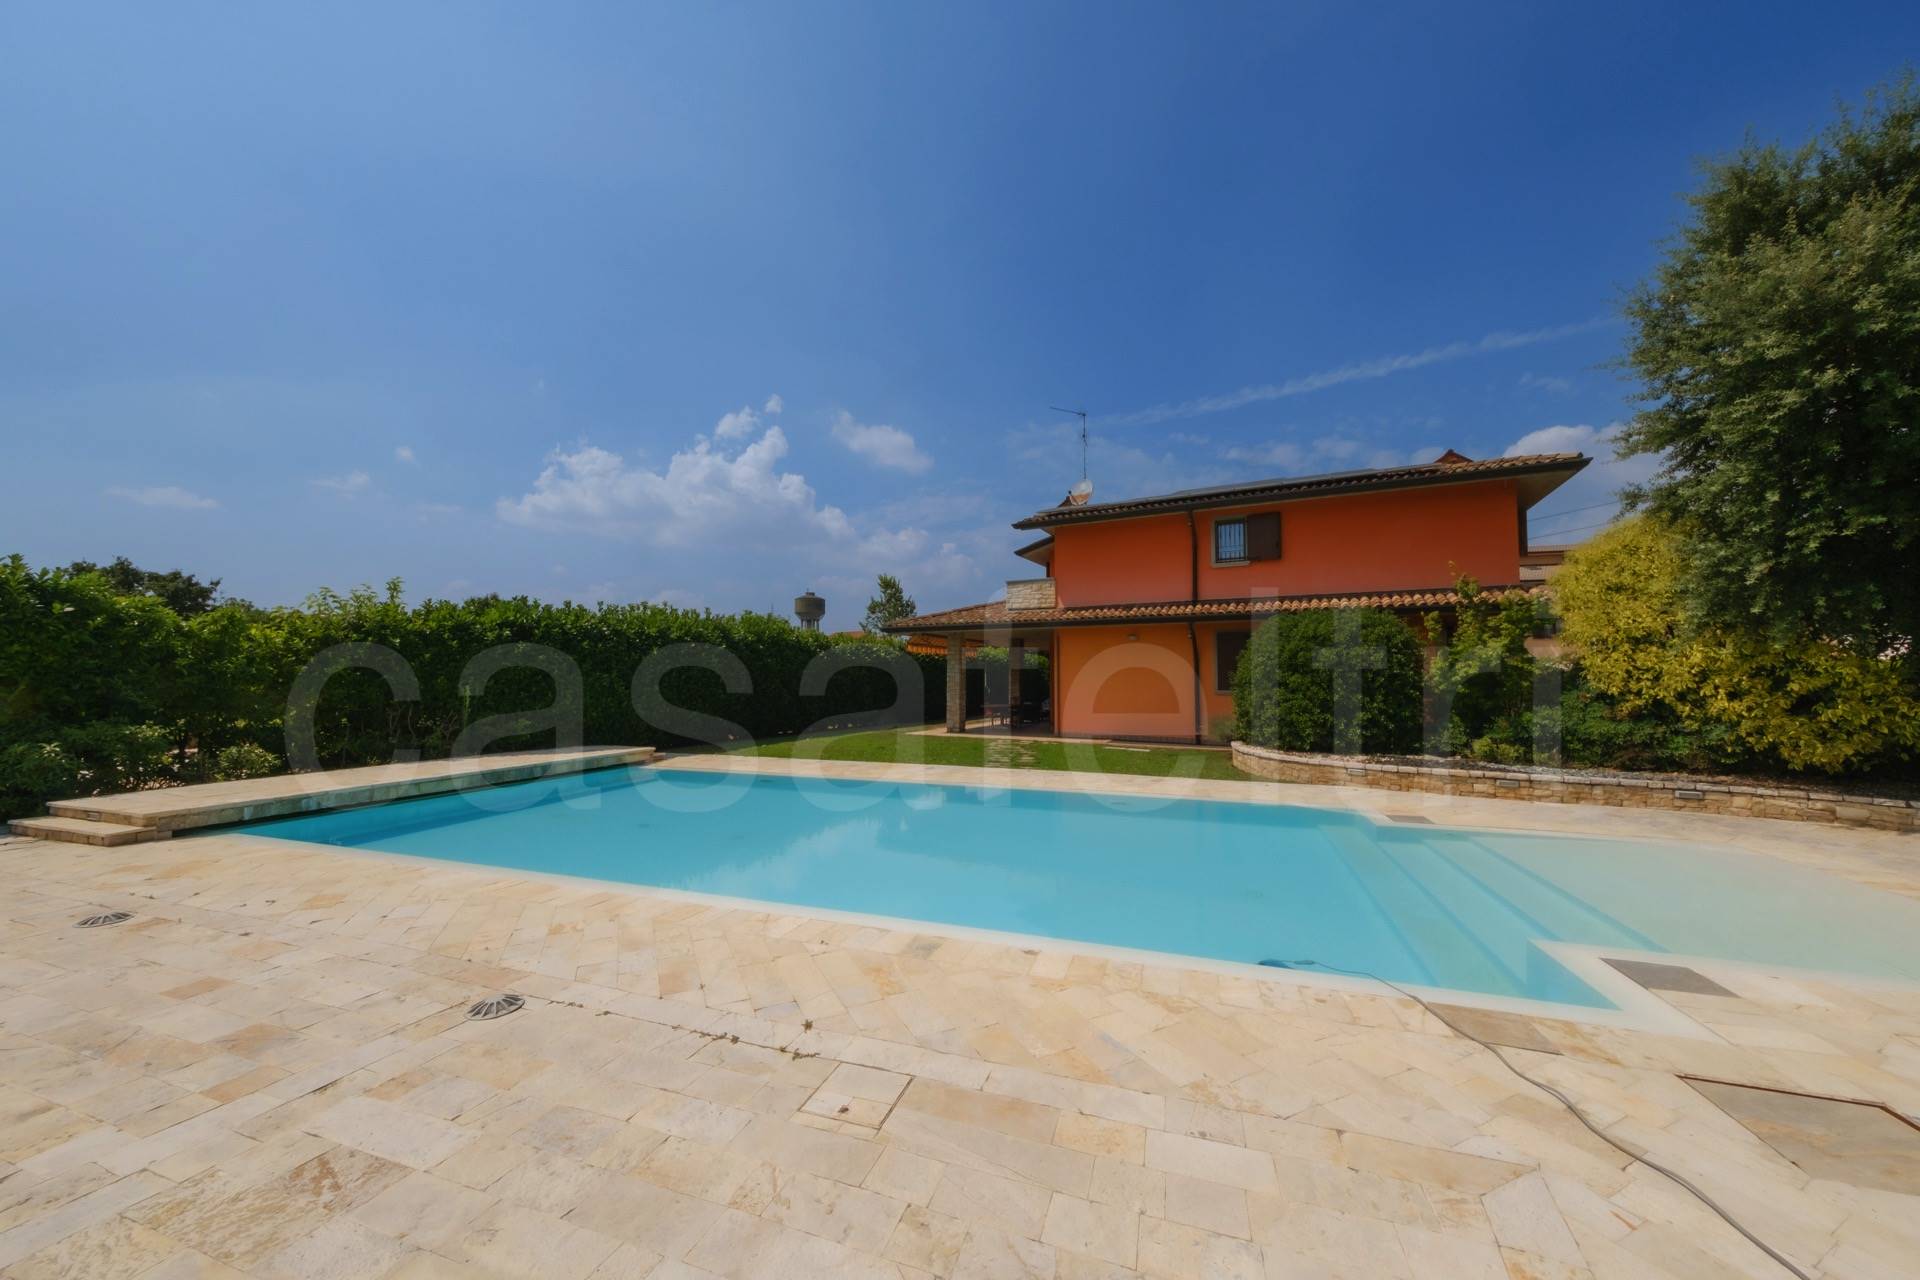 Villa in vendita a Zanica, 6 locali, prezzo € 598.000 | PortaleAgenzieImmobiliari.it